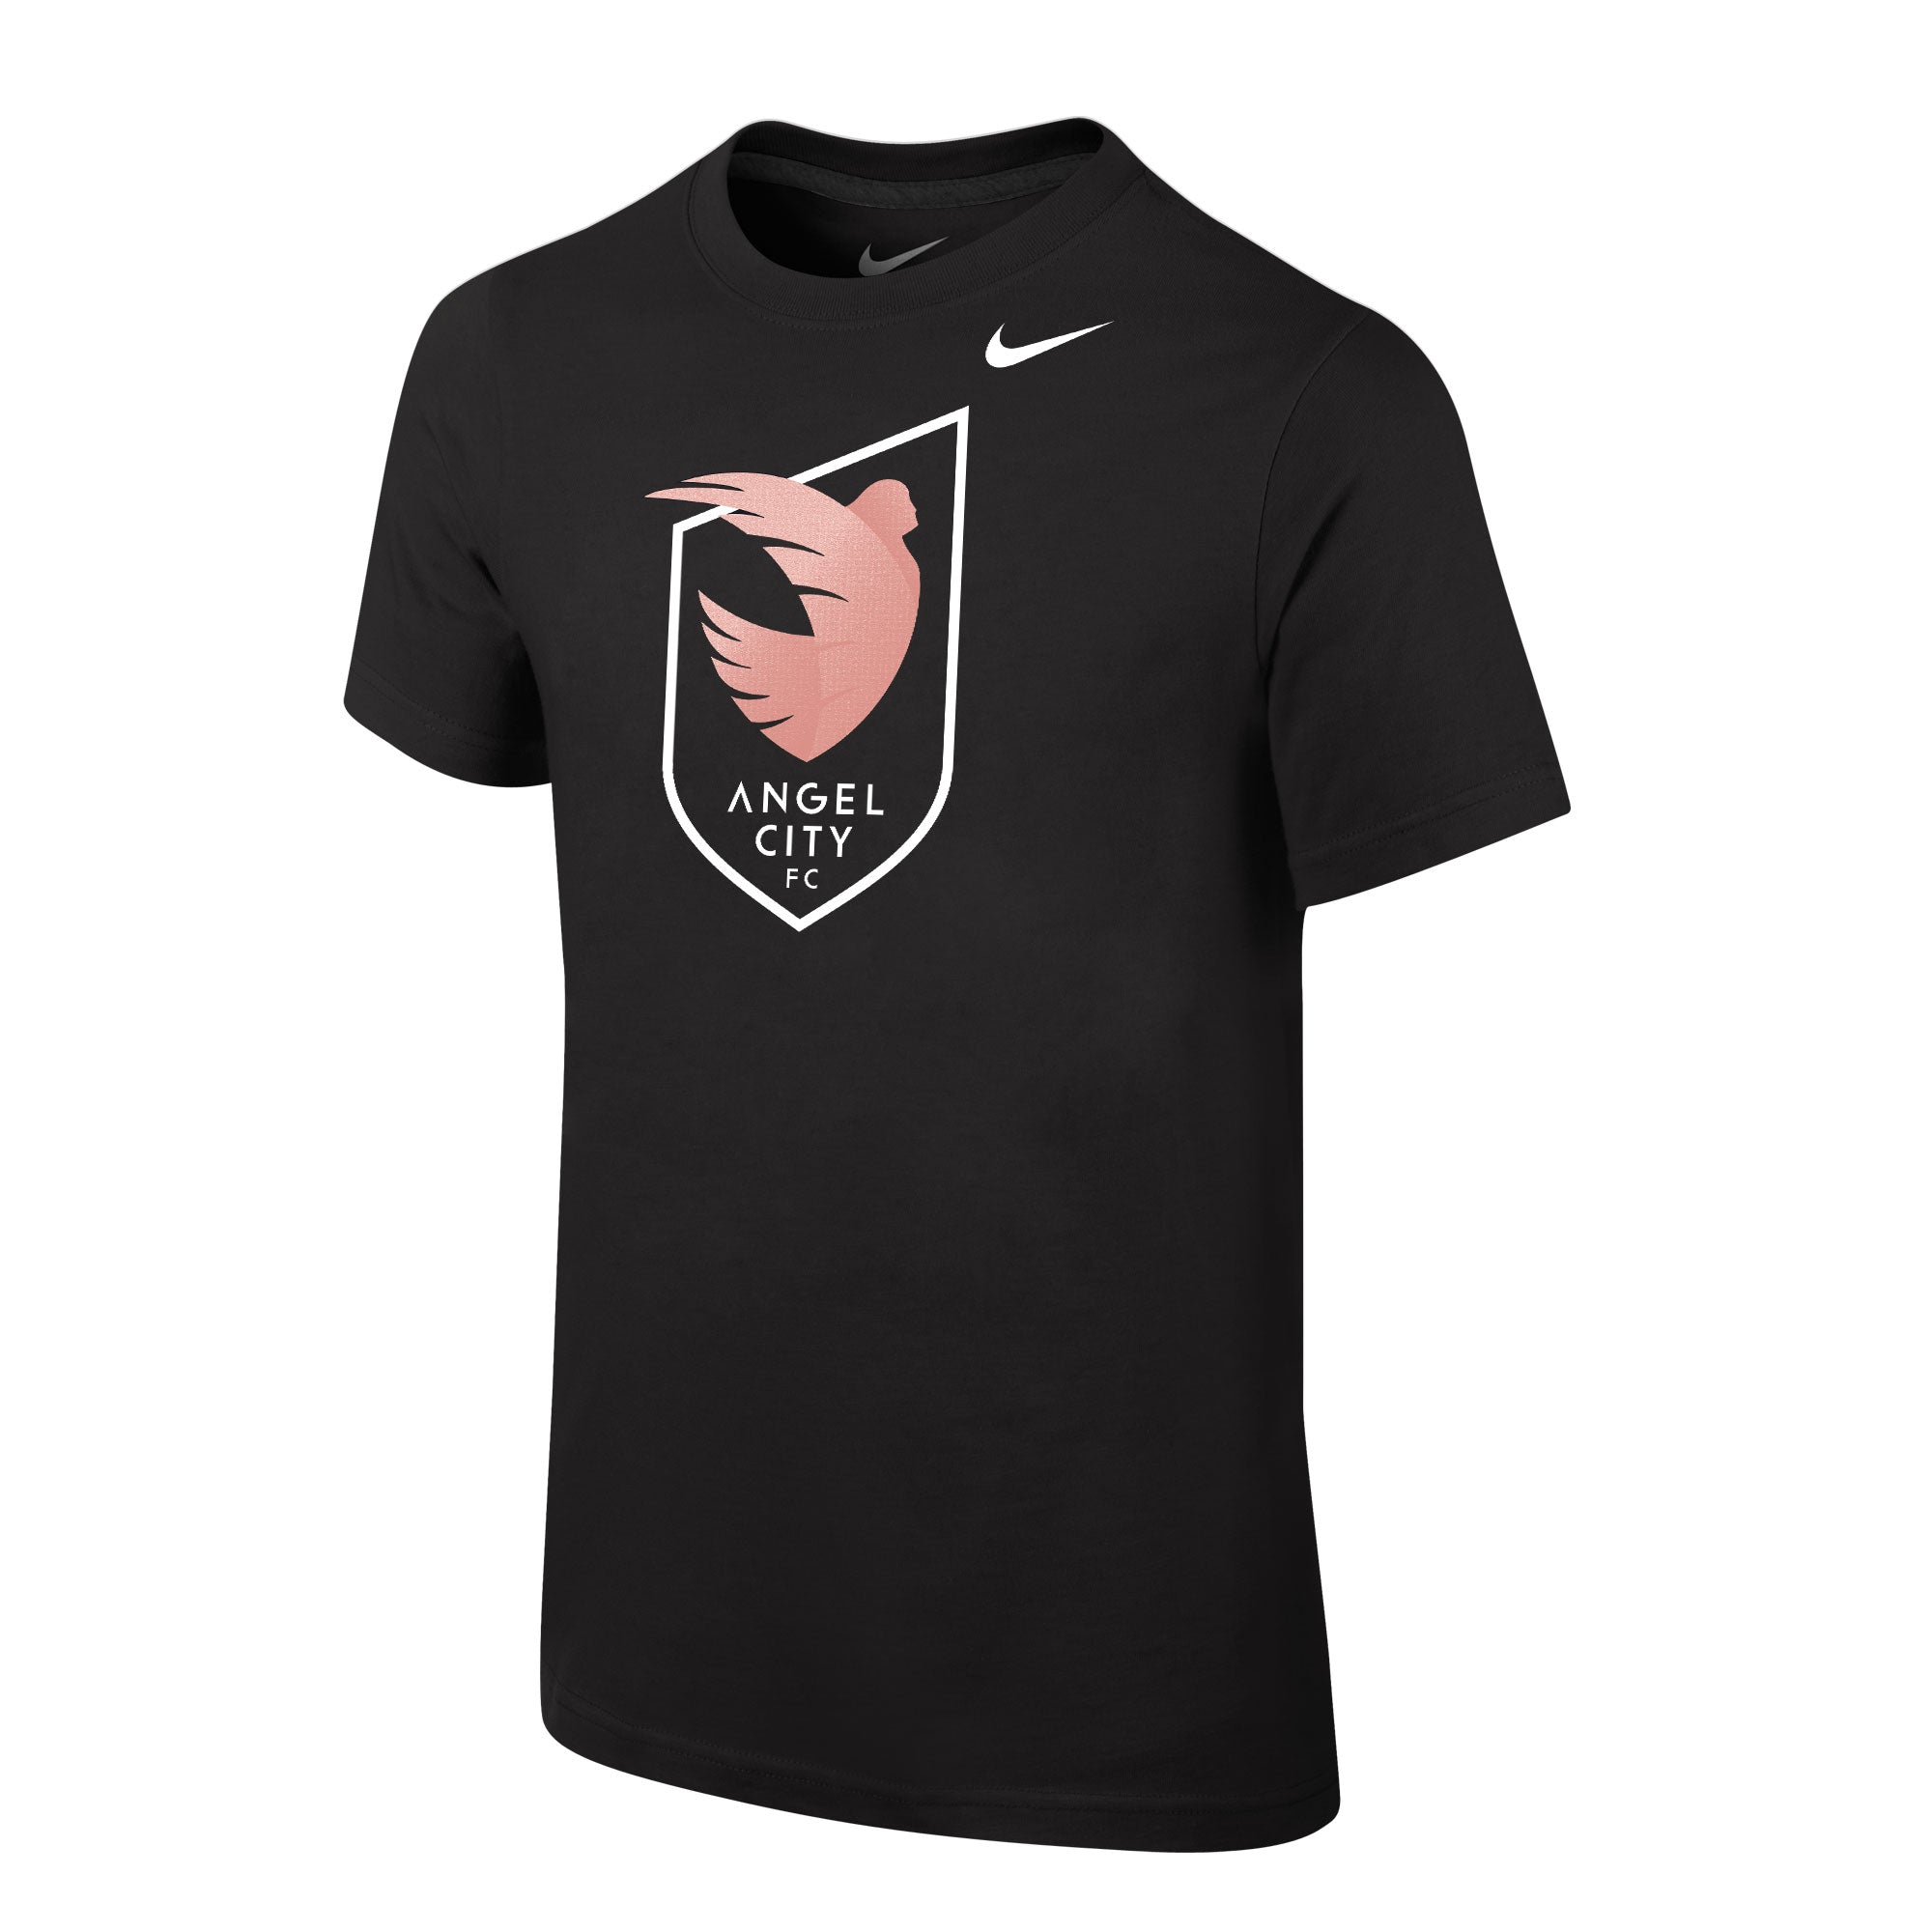 Angel City FC Nike Sol Rosa Crest - Camiseta de manga corta para jóvenes, color negro